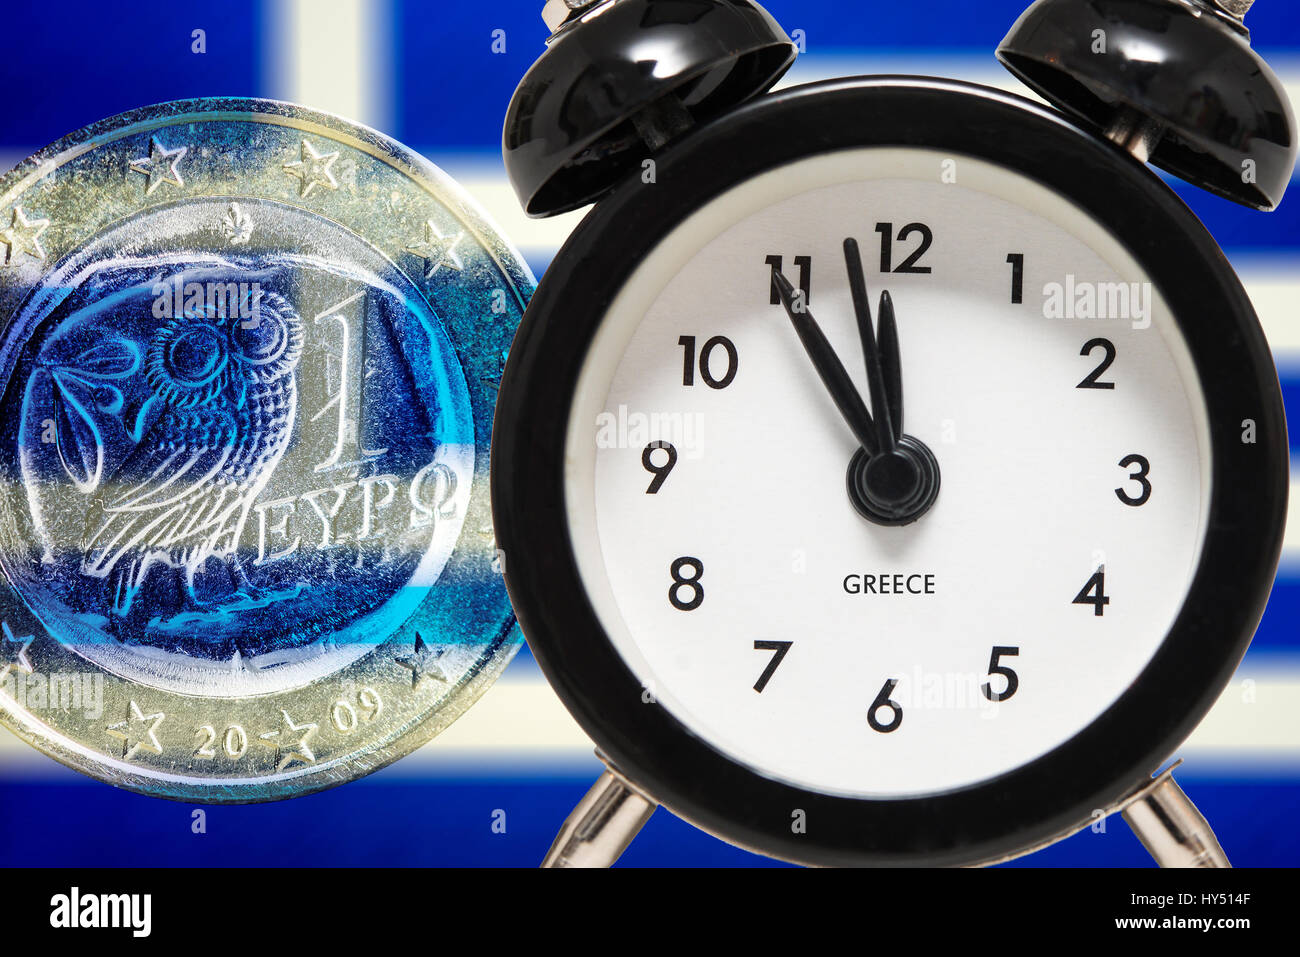 Alarm clock on five before twelve before Greek flag and euro, symbolic photo debt quarrel, Wecker auf Fuenf vor Zwoelf vor griechischer Fahne und Euro Stock Photo